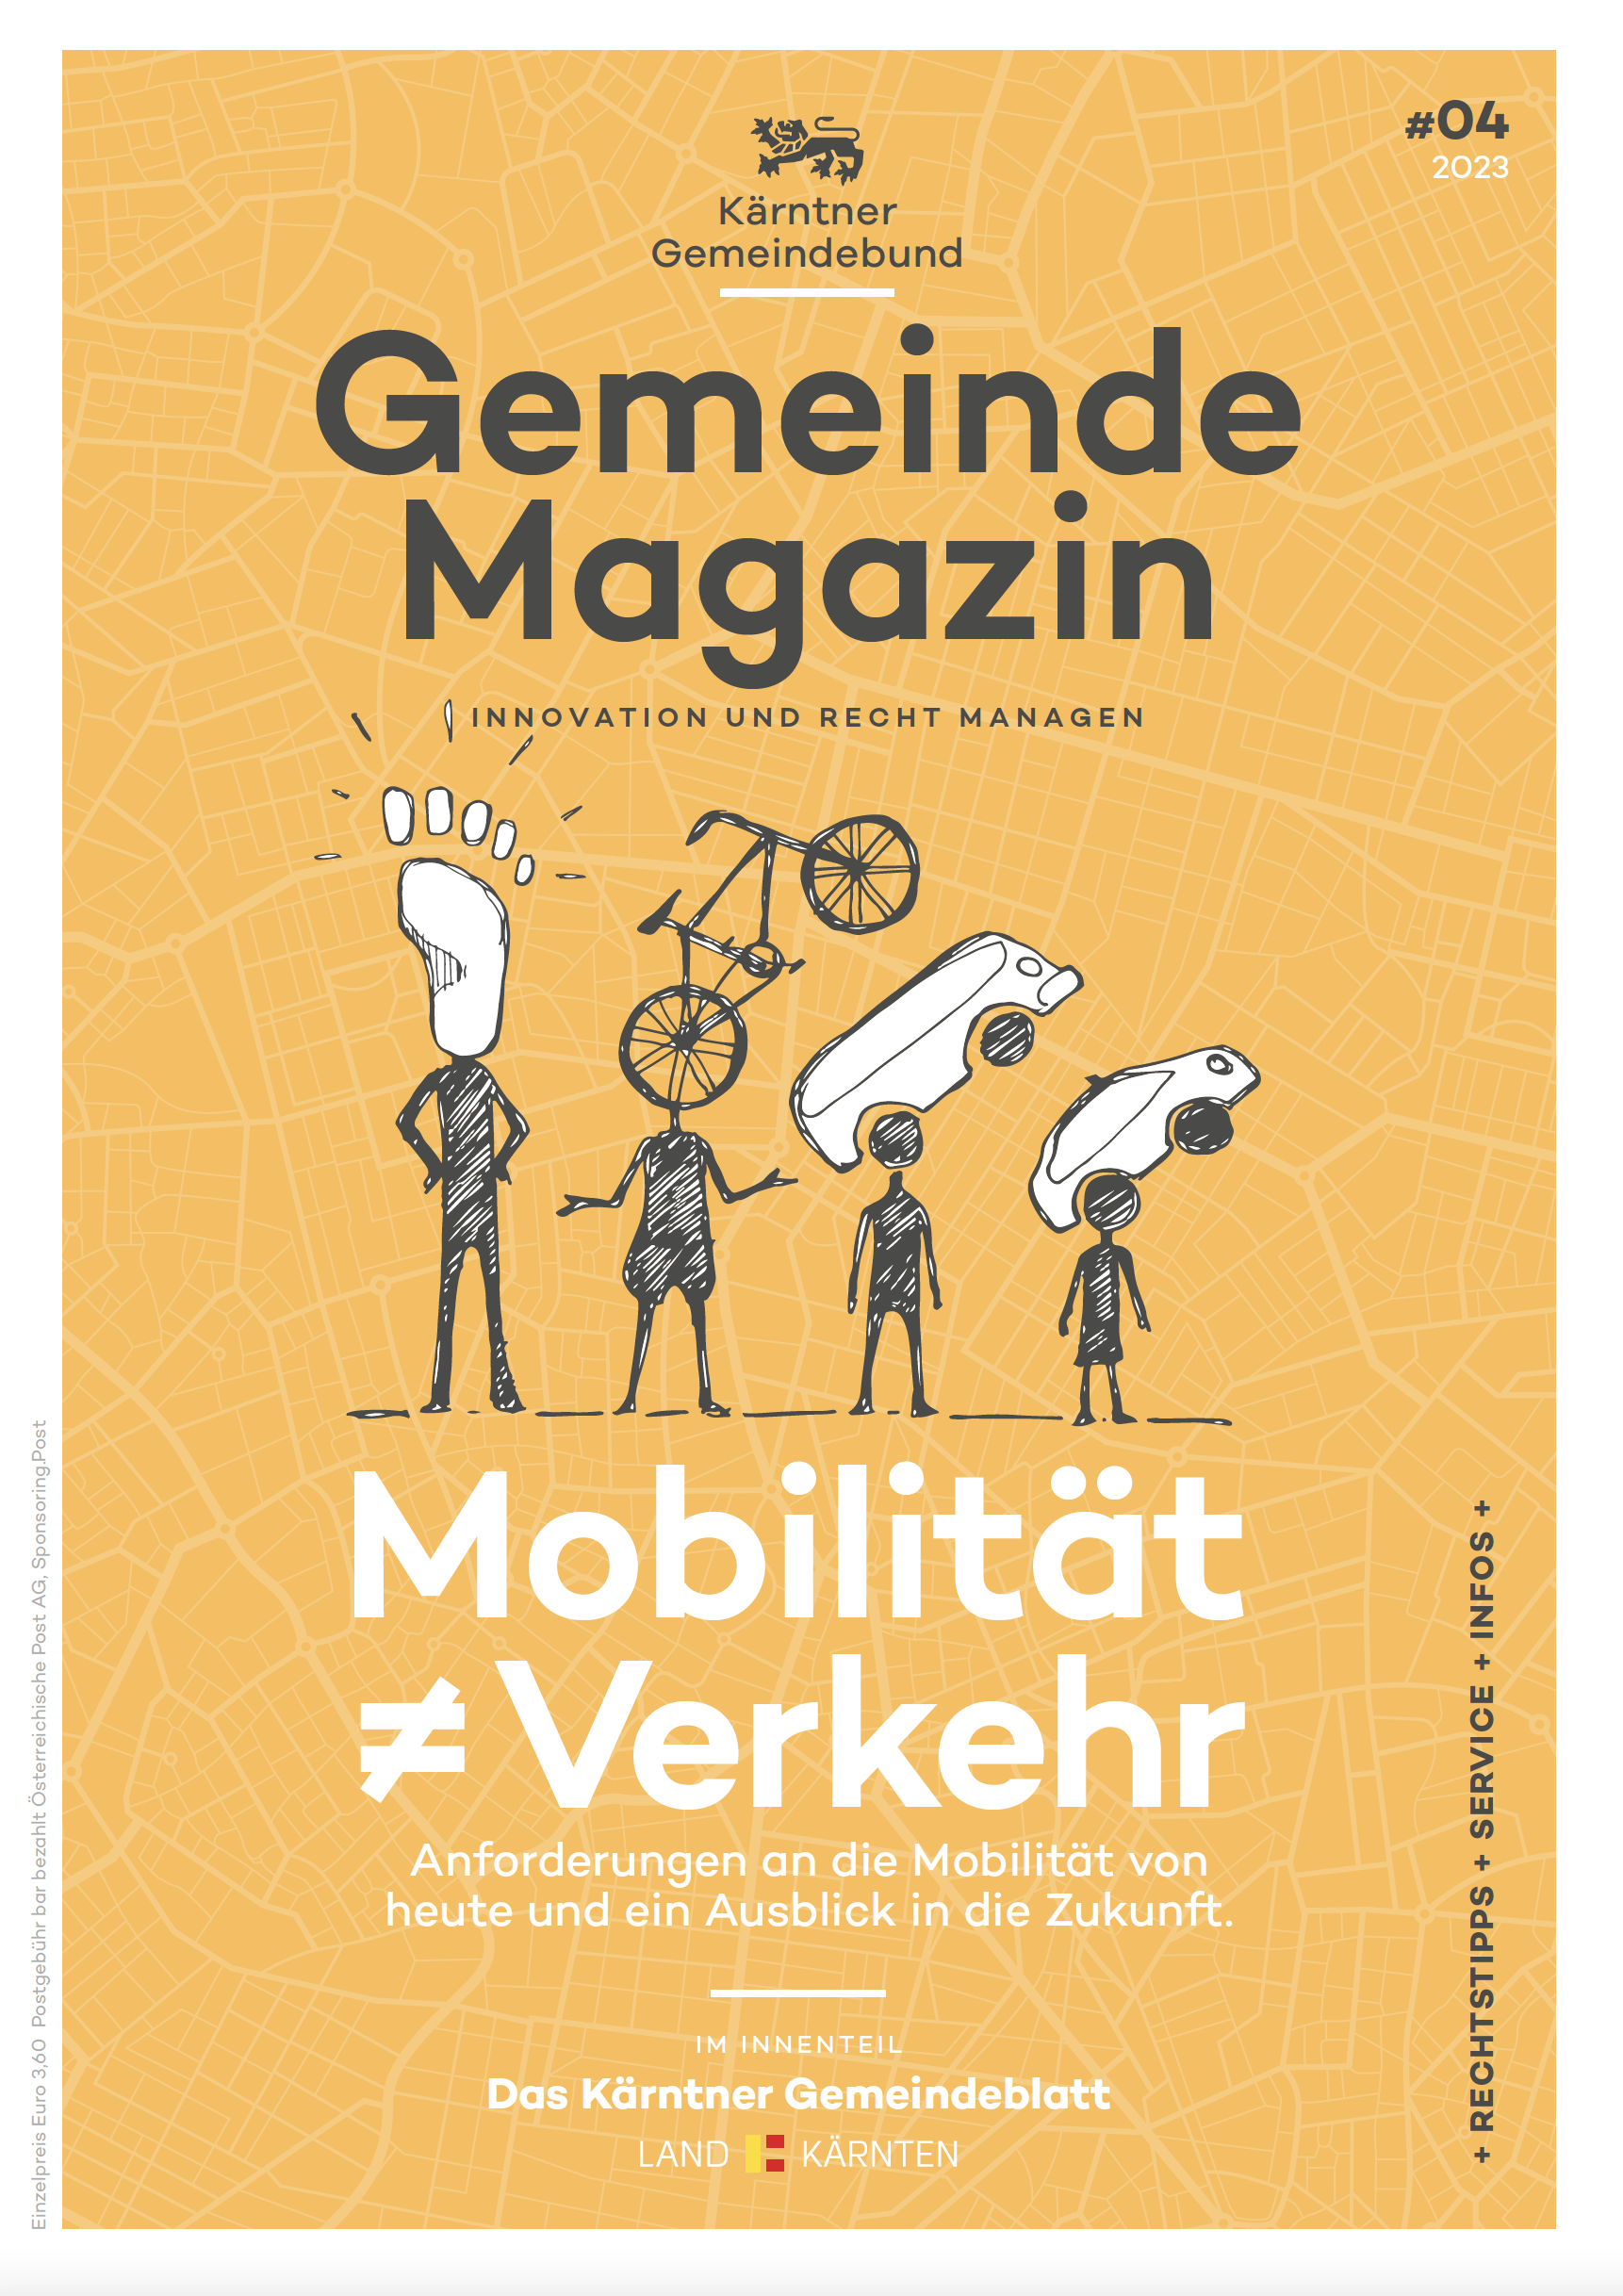 Kärntner Gemeindebund Gemeindemagazin Ausgabe 04 von 2023 zum Thema Mobilität Verkehr